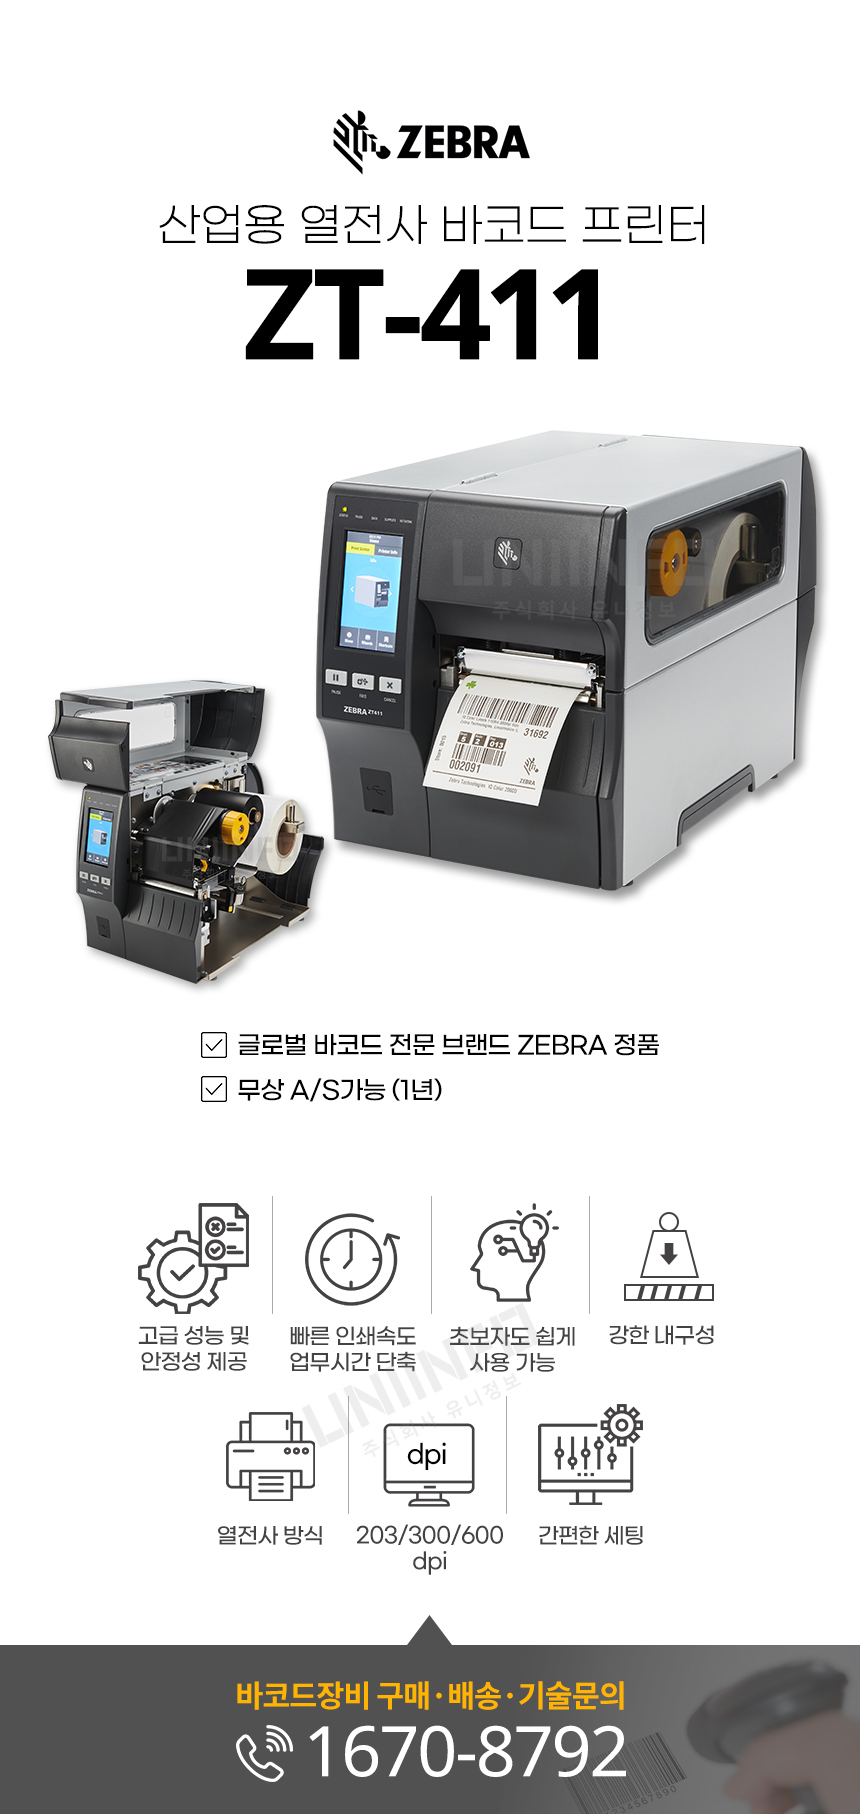 zebra 산업용 열전사 바코드 프린터 zt-411 글로벌 바코드 전문 브랜드 zebra 정품 무상 as 가능 고성능 안정성 업무 시간 단축 강한 내구성